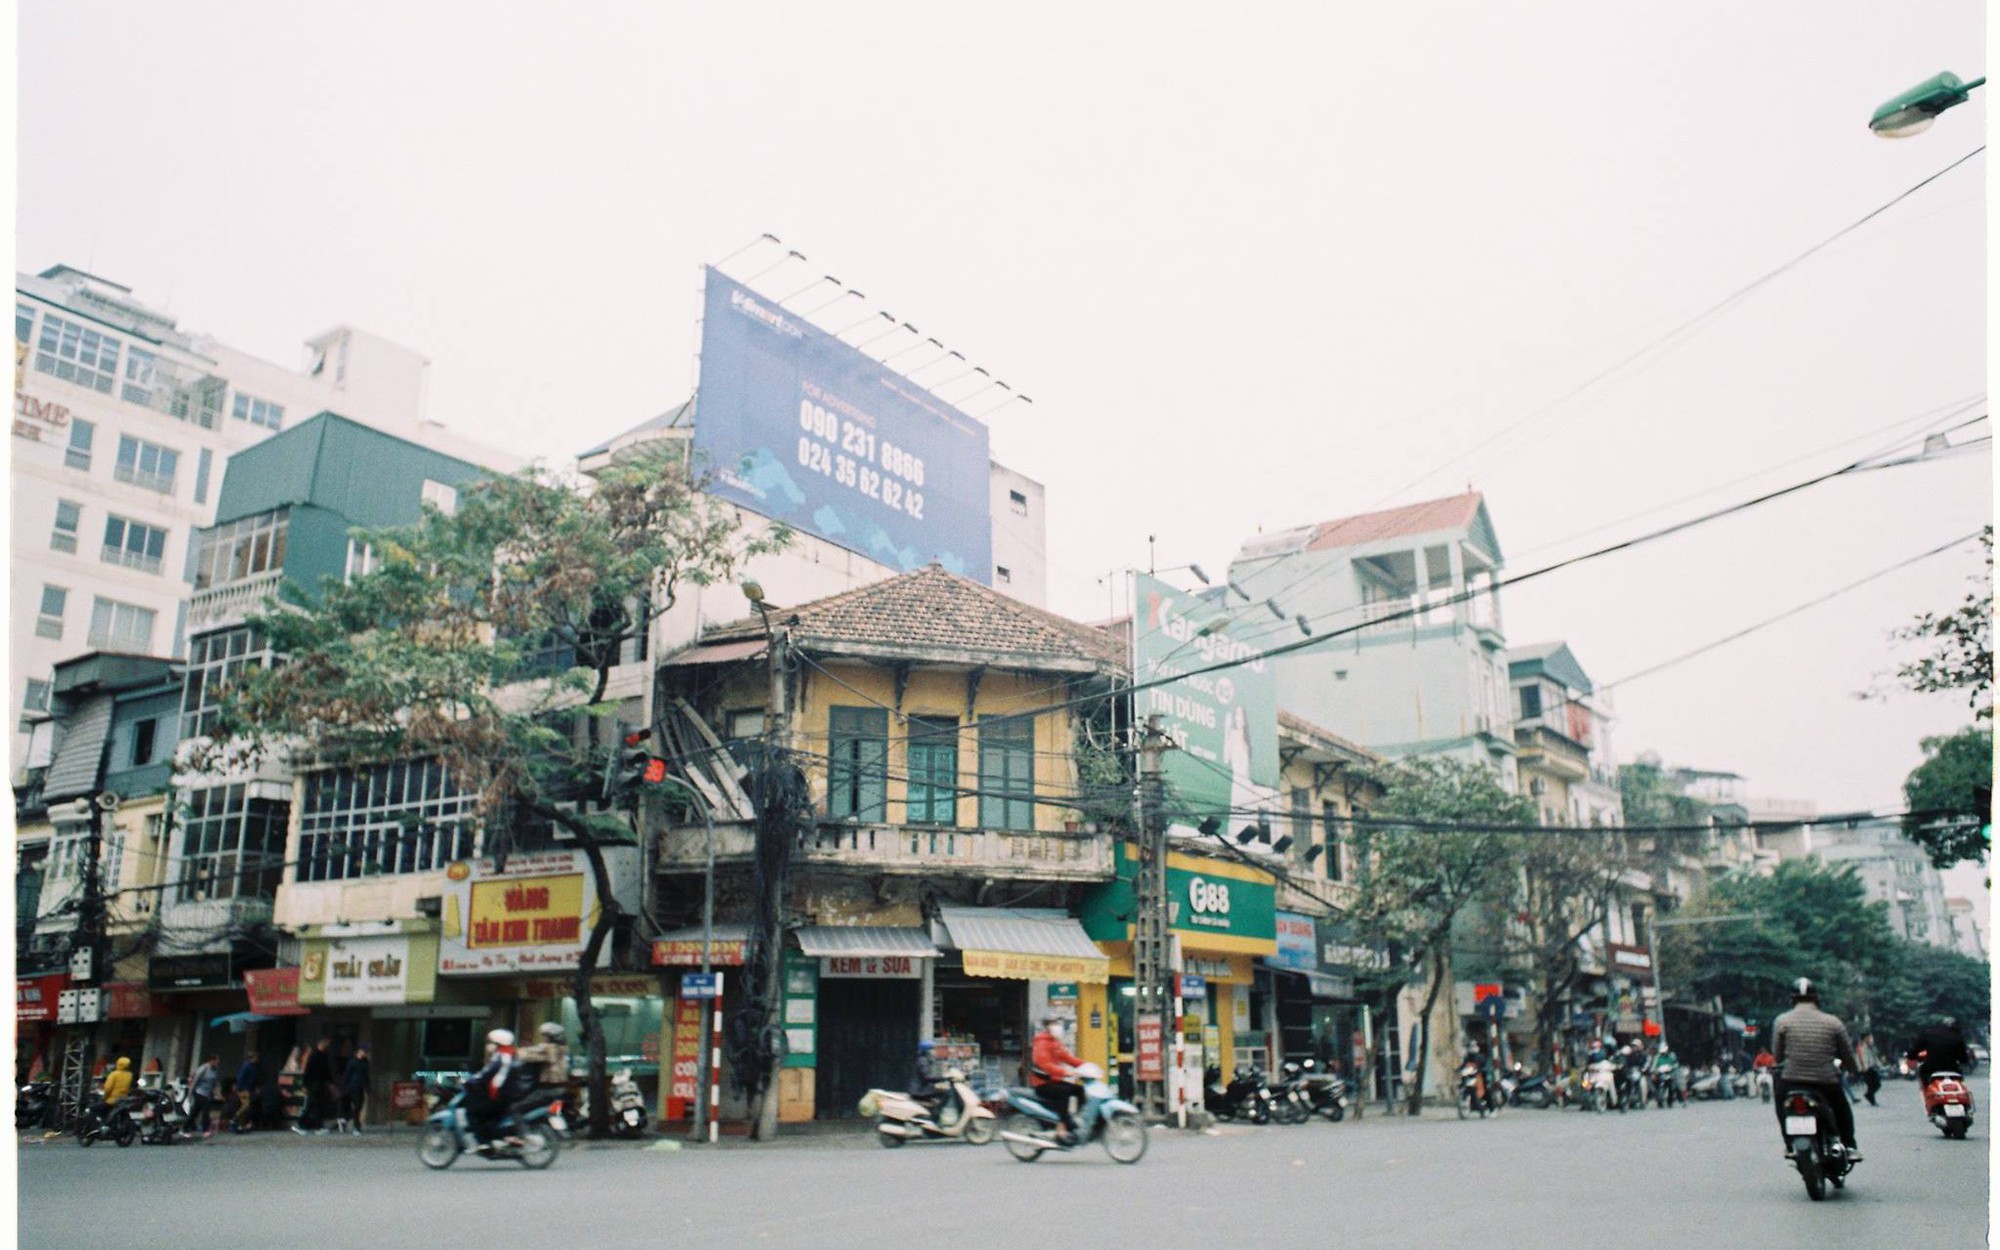 Ký ức Hà Nội: Thủ đô níu giữ trái tim tôi bằng những vẻ đẹp dịu dàng, thân thương